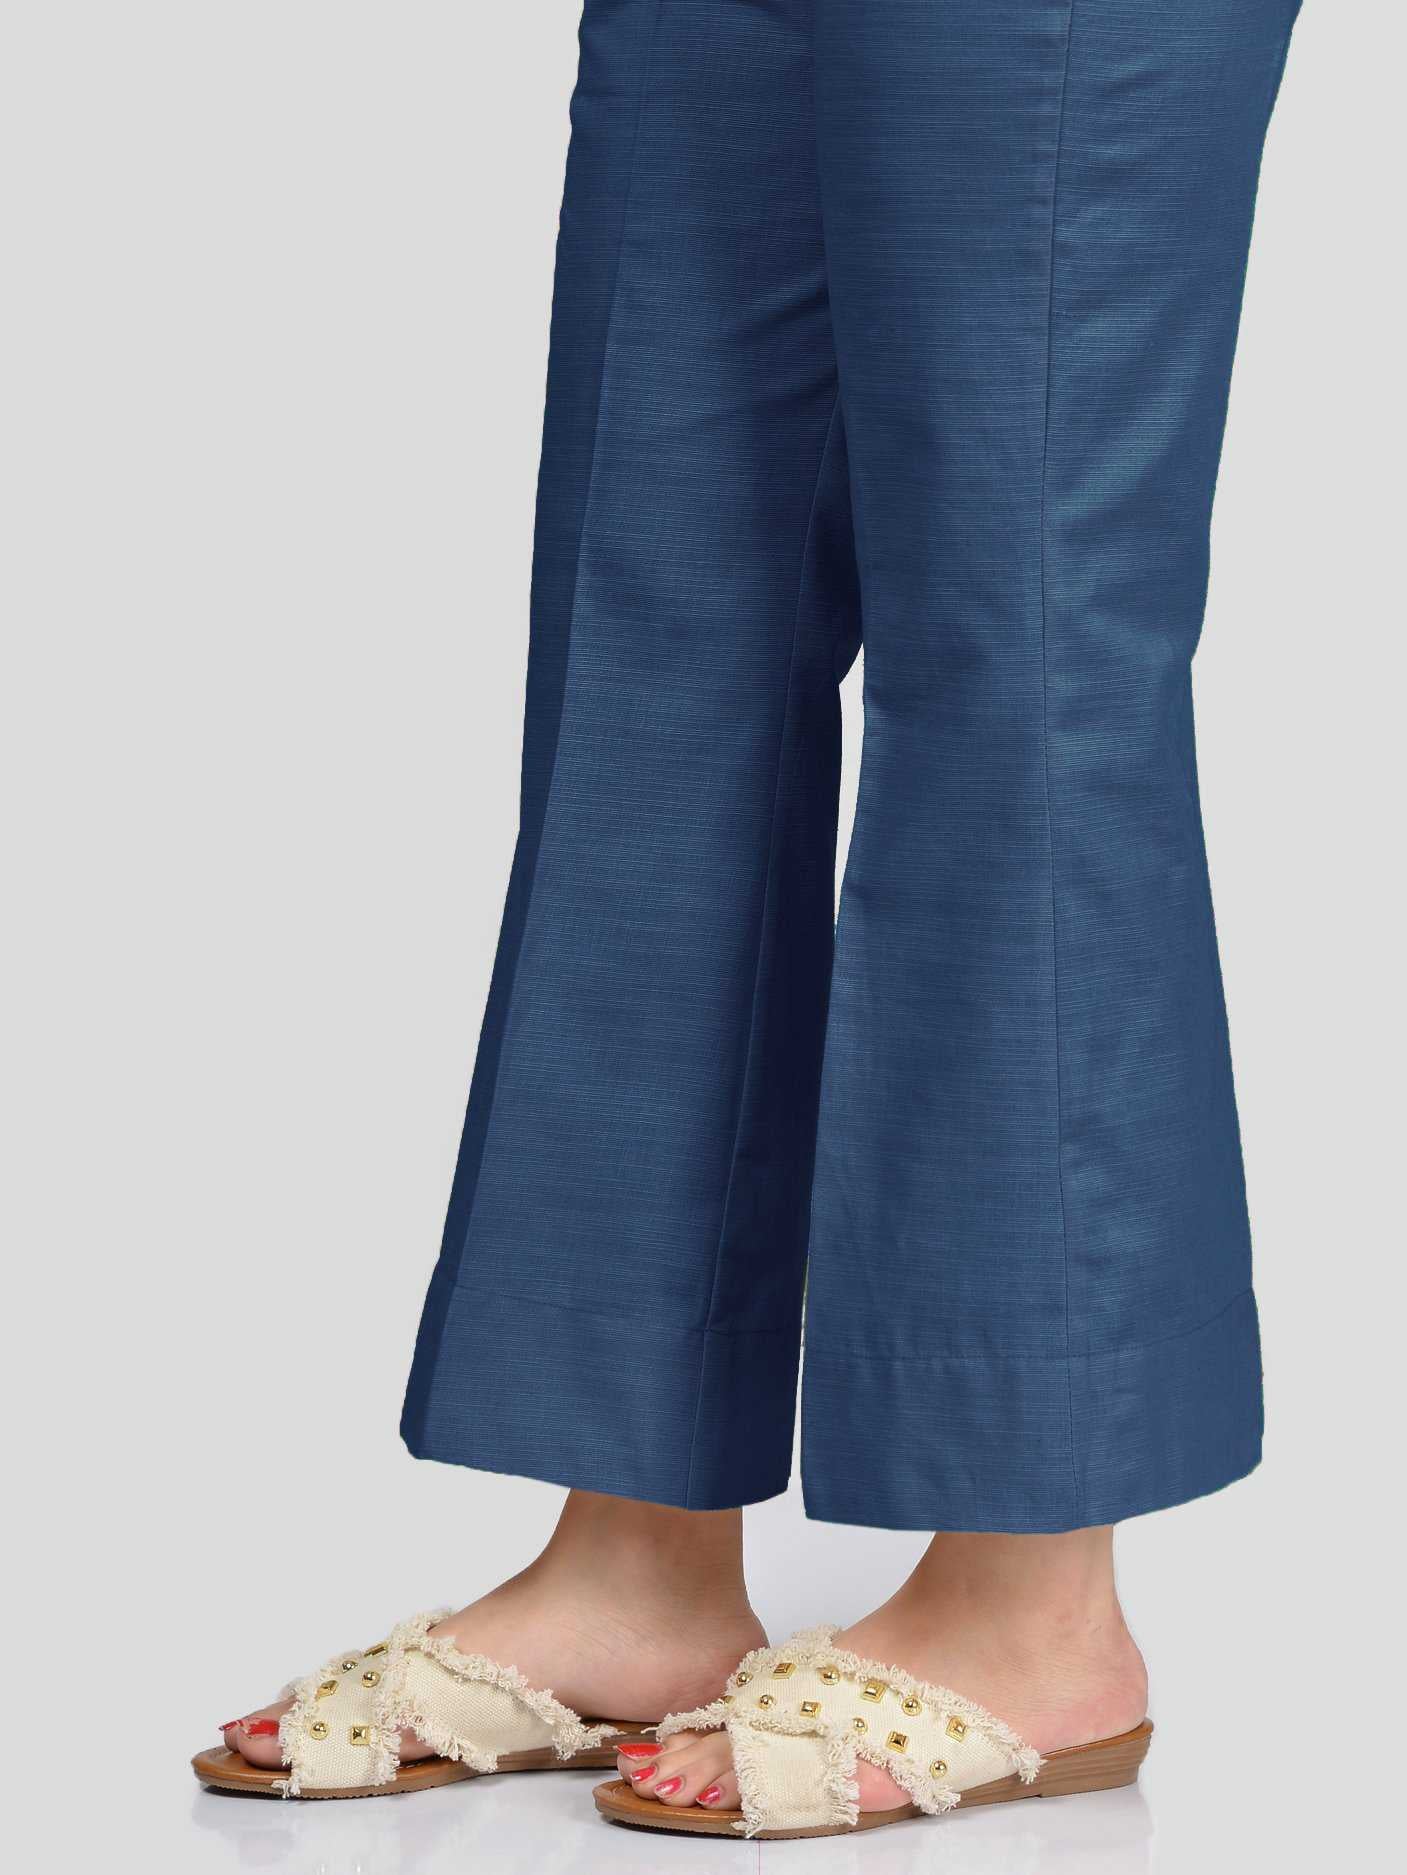 Limelight Unstitched Khaddar Trouser - Blue U1021-LSF-BLU 2019 | Limelight Sale 2020